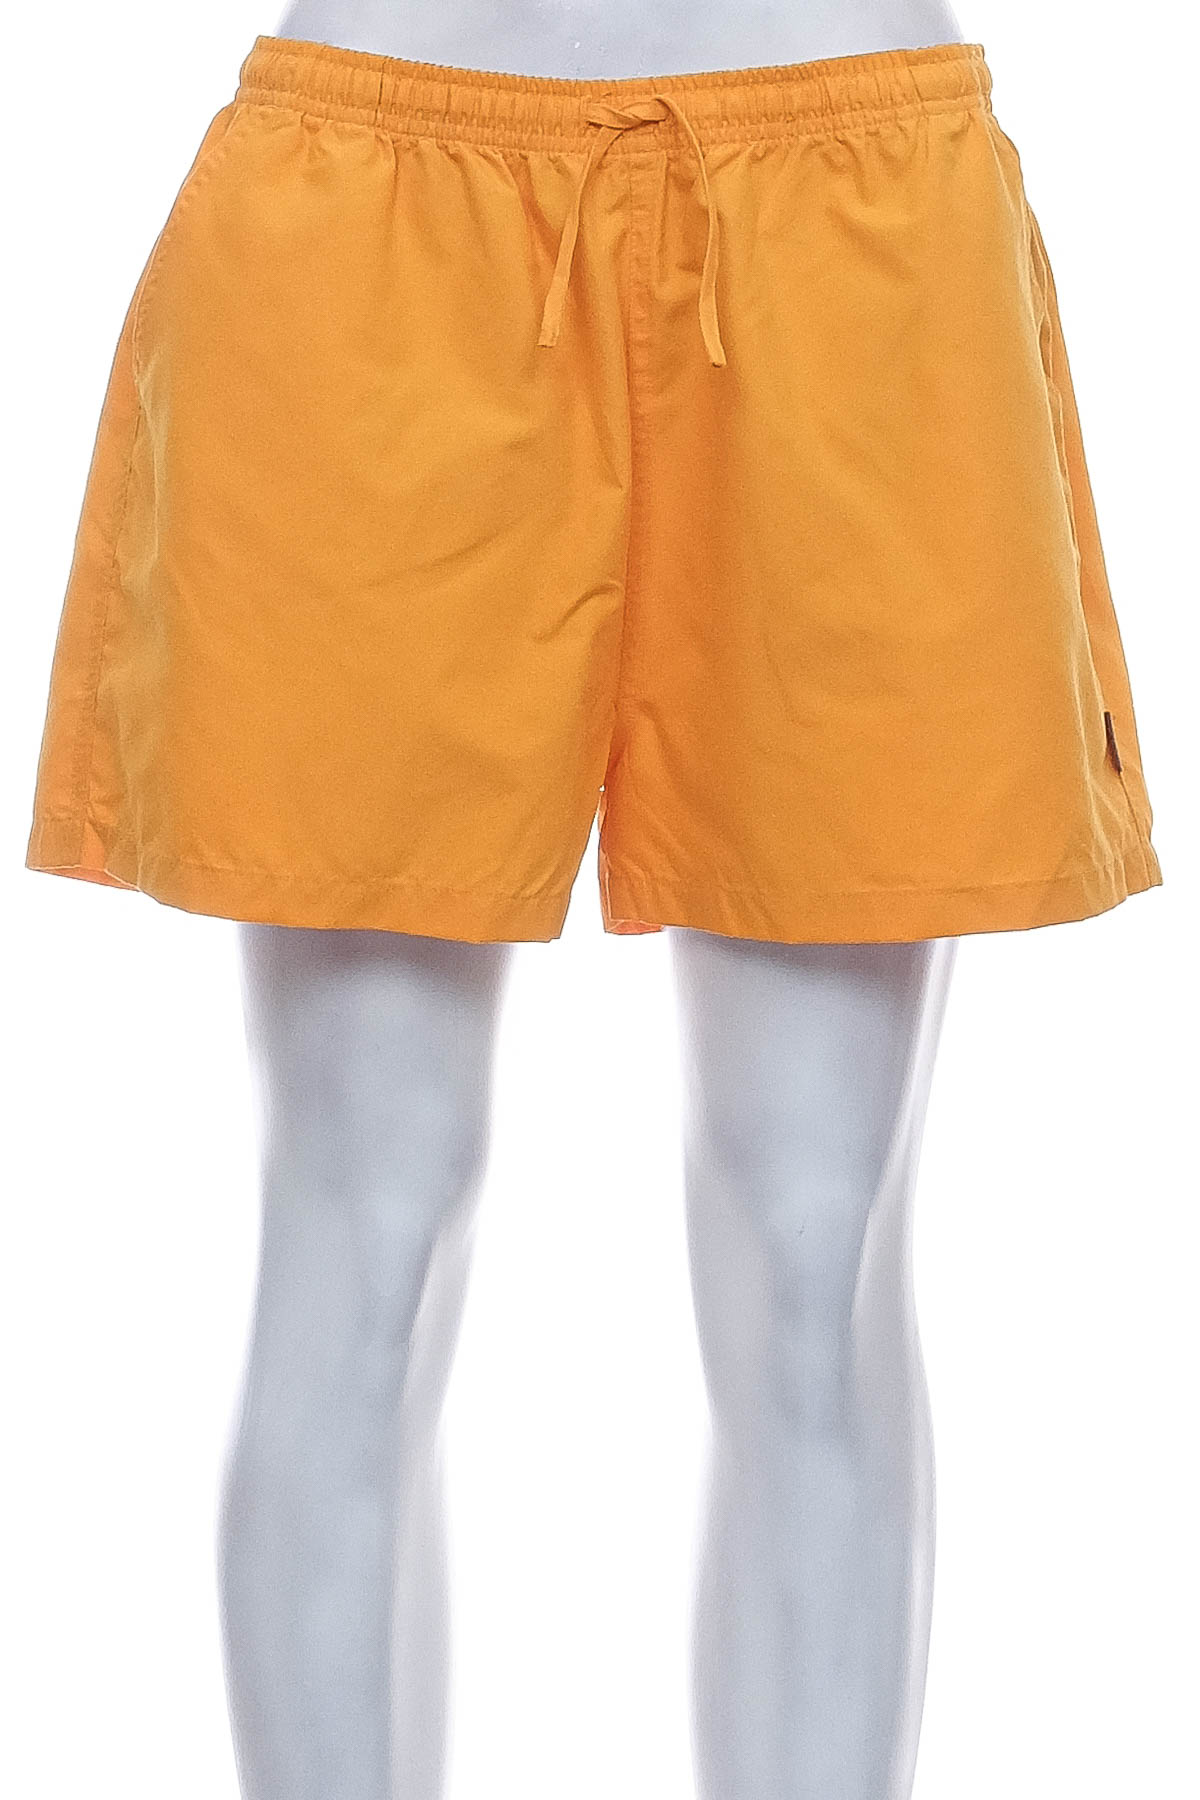 Women's shorts - Mitra - 0